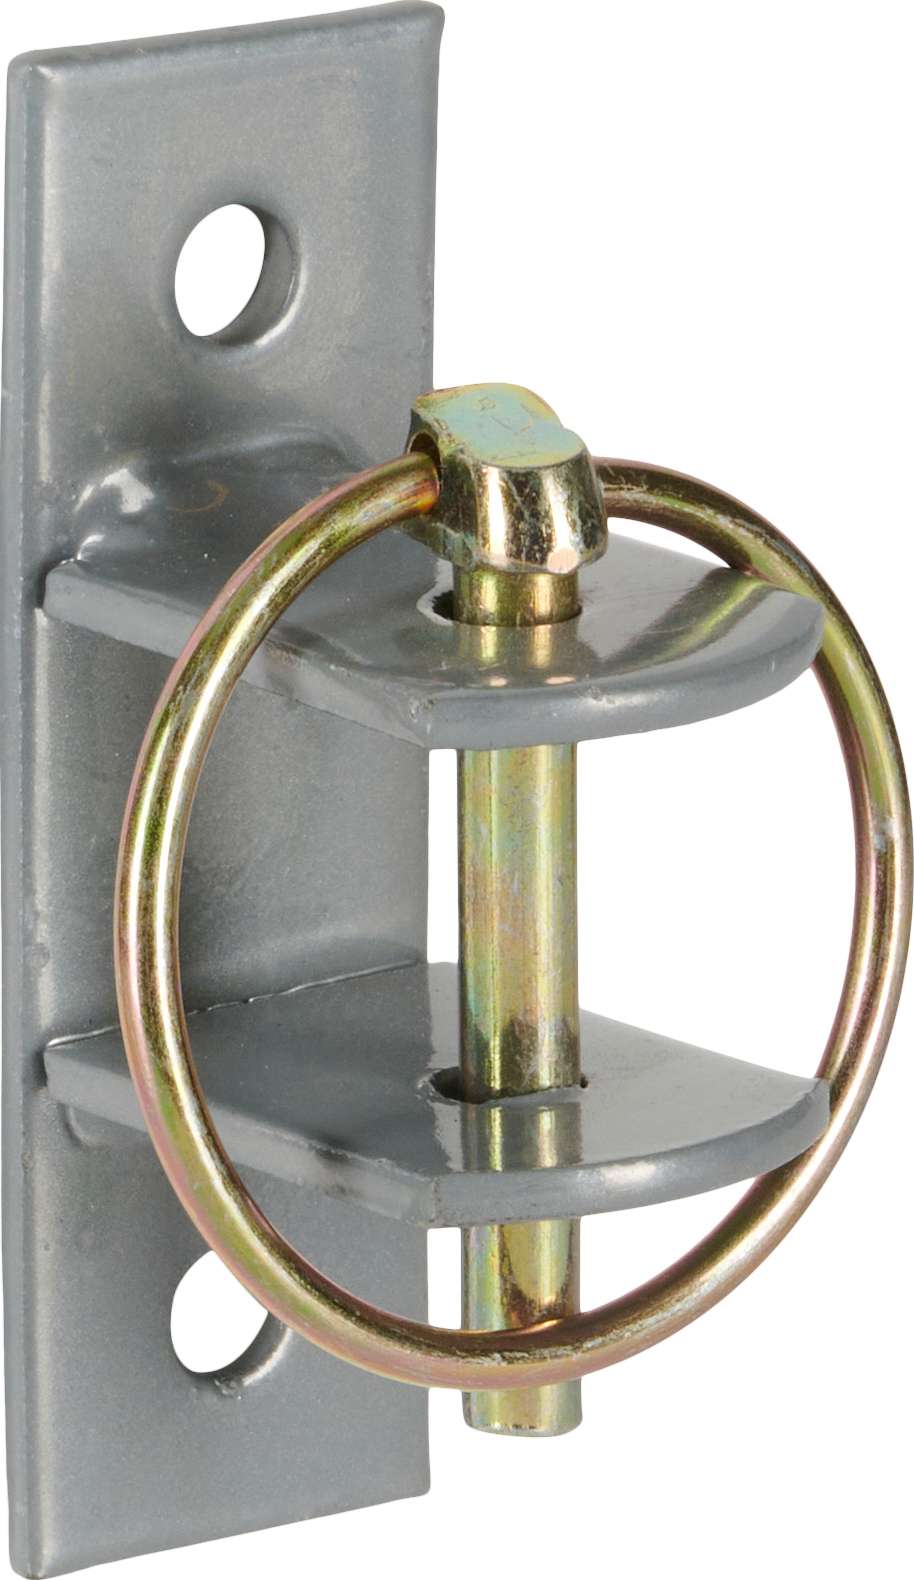 Locking Pin Spandholder